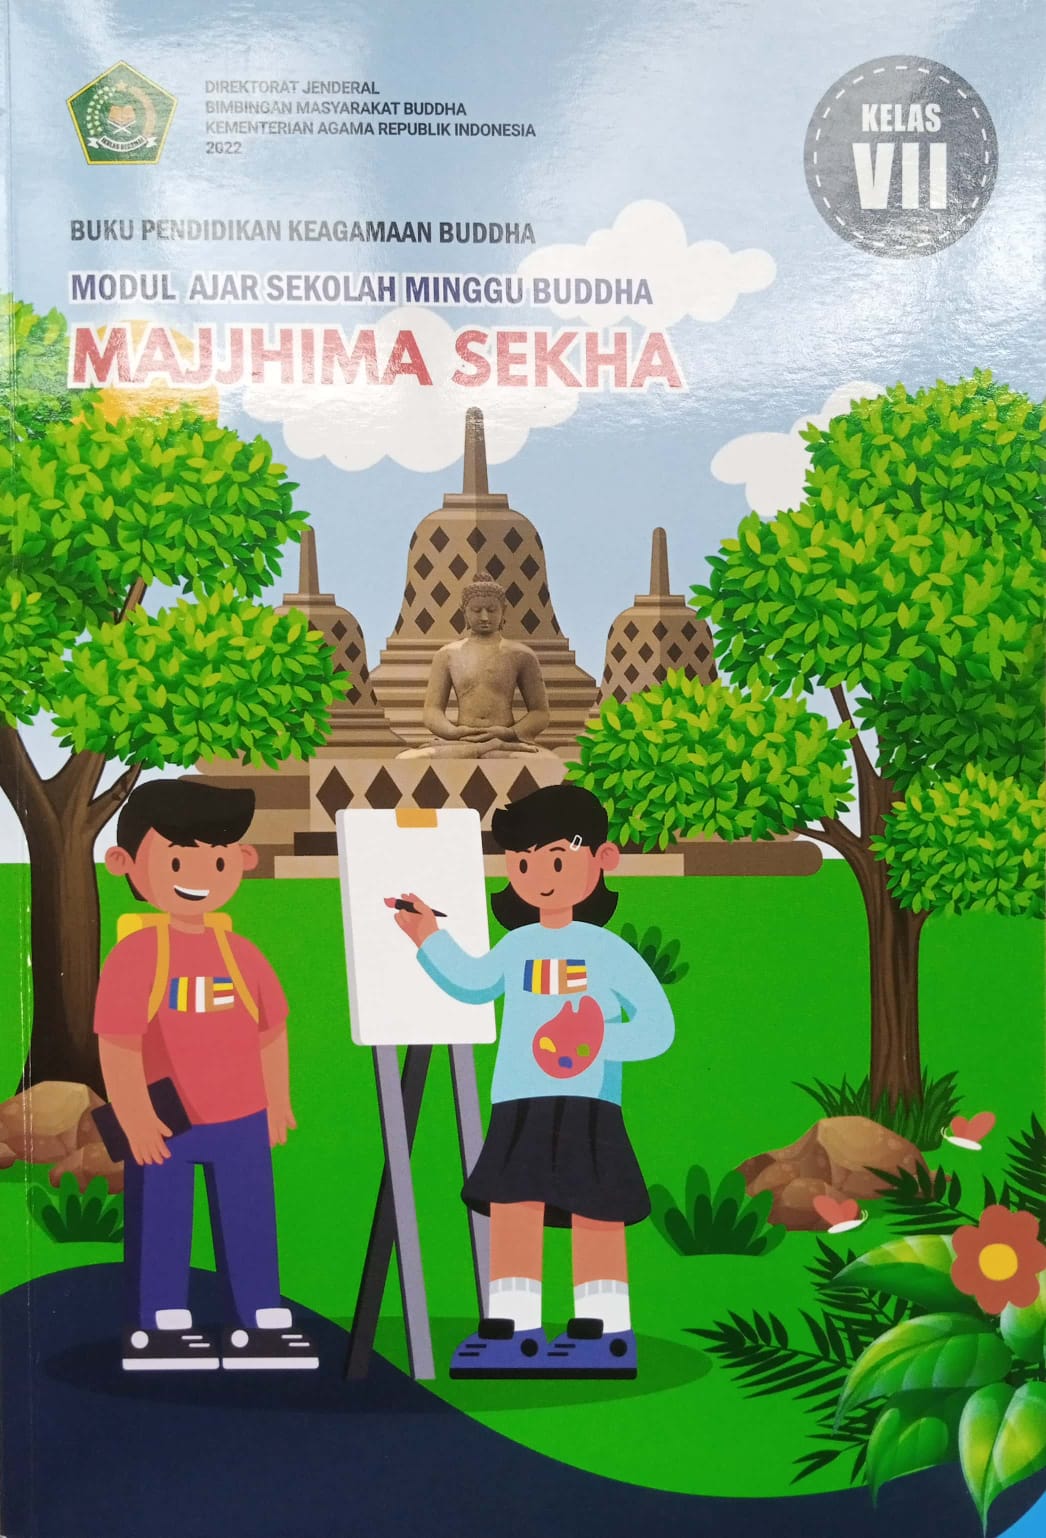 Buku pendidikan keagamaan Buddha modul ajar sekolah minggu Buddha majjhima sekha :  kelas VII